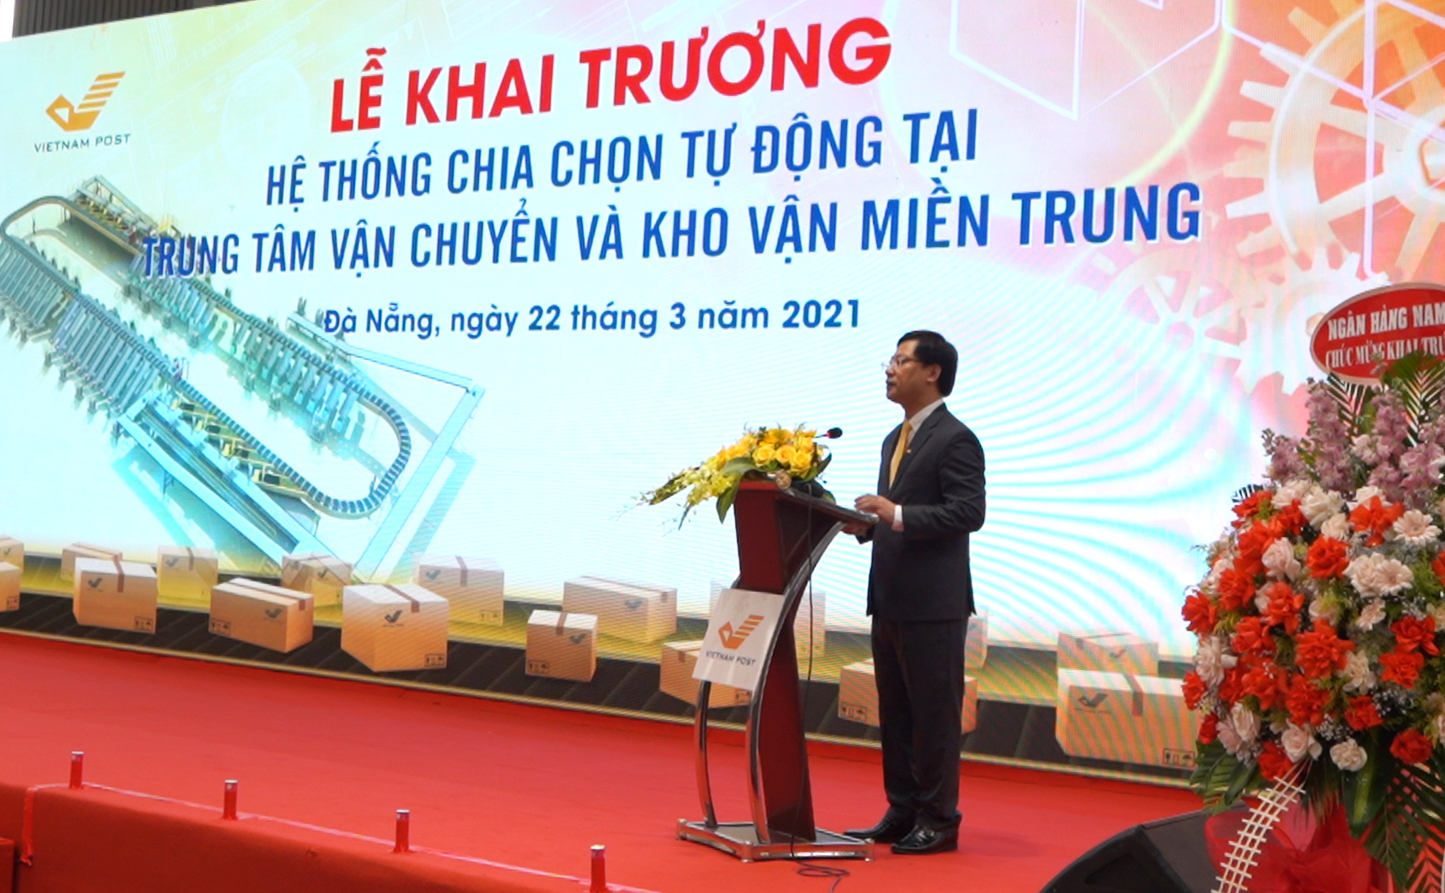 Đồng chí Chu Quang Hào, Tổng Giám đốc Vietnam Post phát biểu tại buổi khai trương.